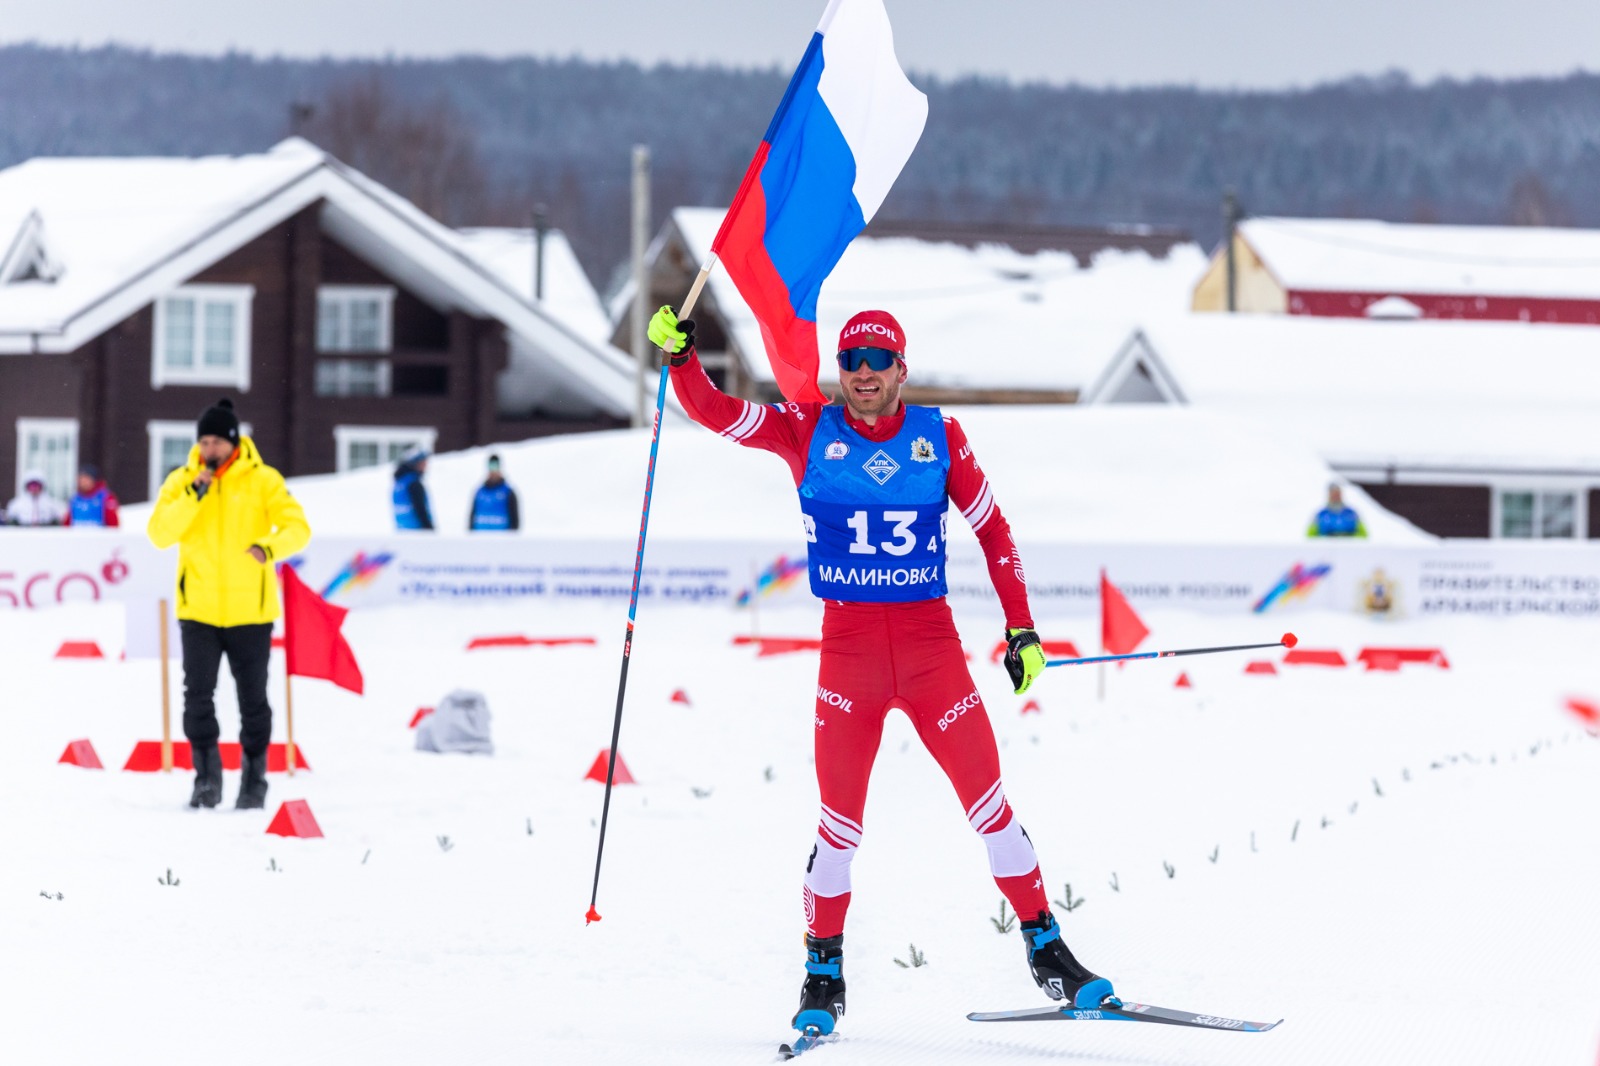 Команда Тюменской области выиграла мужскую эстафету 4х10 км на Чемпионских высотах